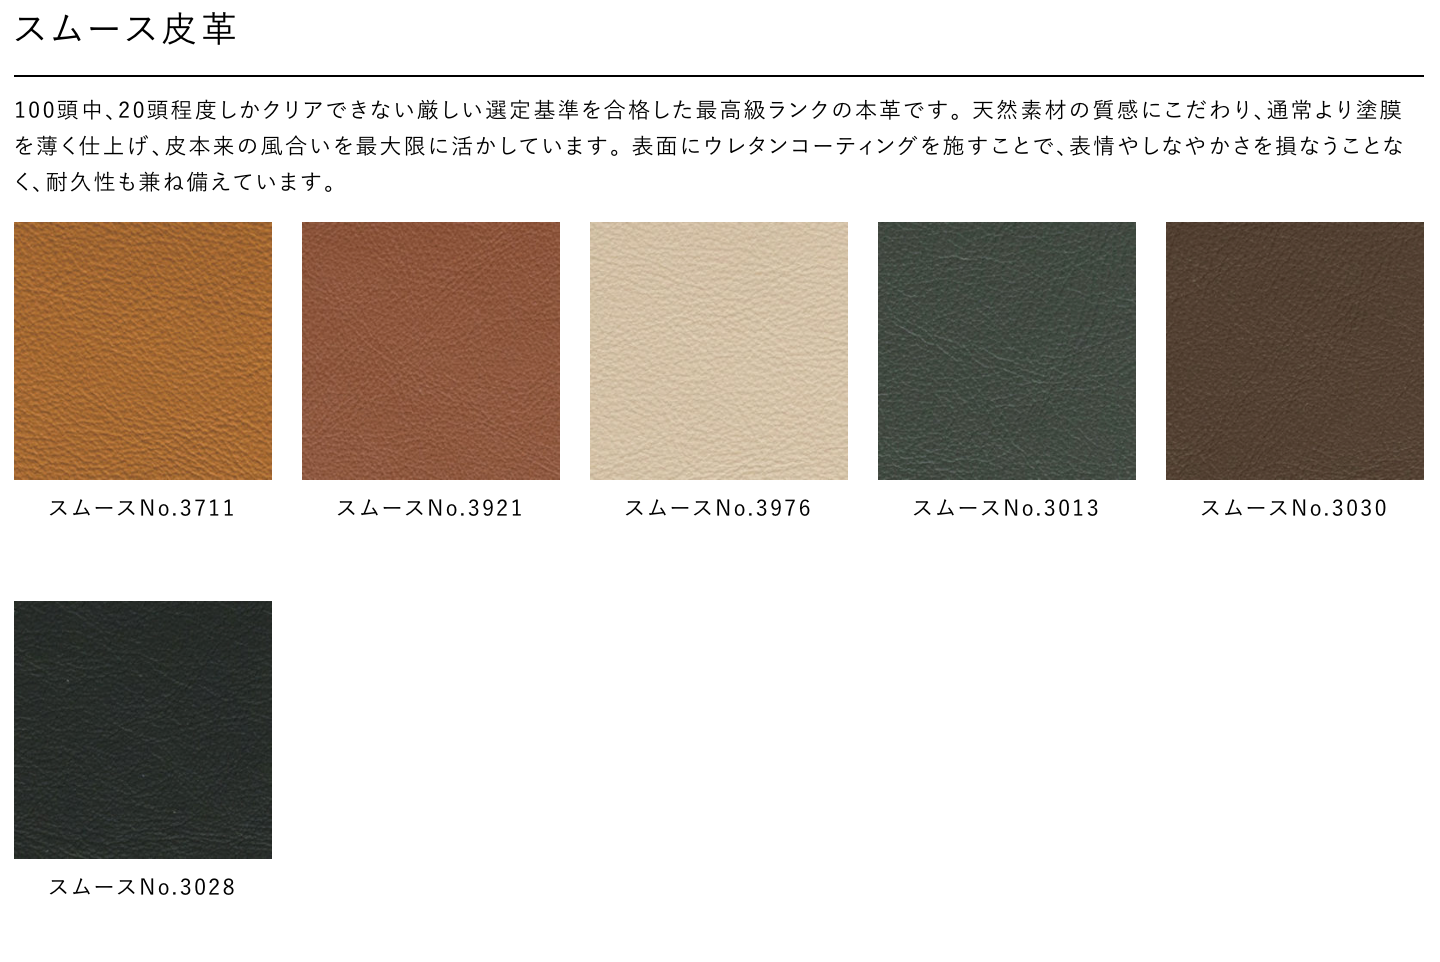 浜本工芸 Hamamoto Kougei No.7200 series Sofa